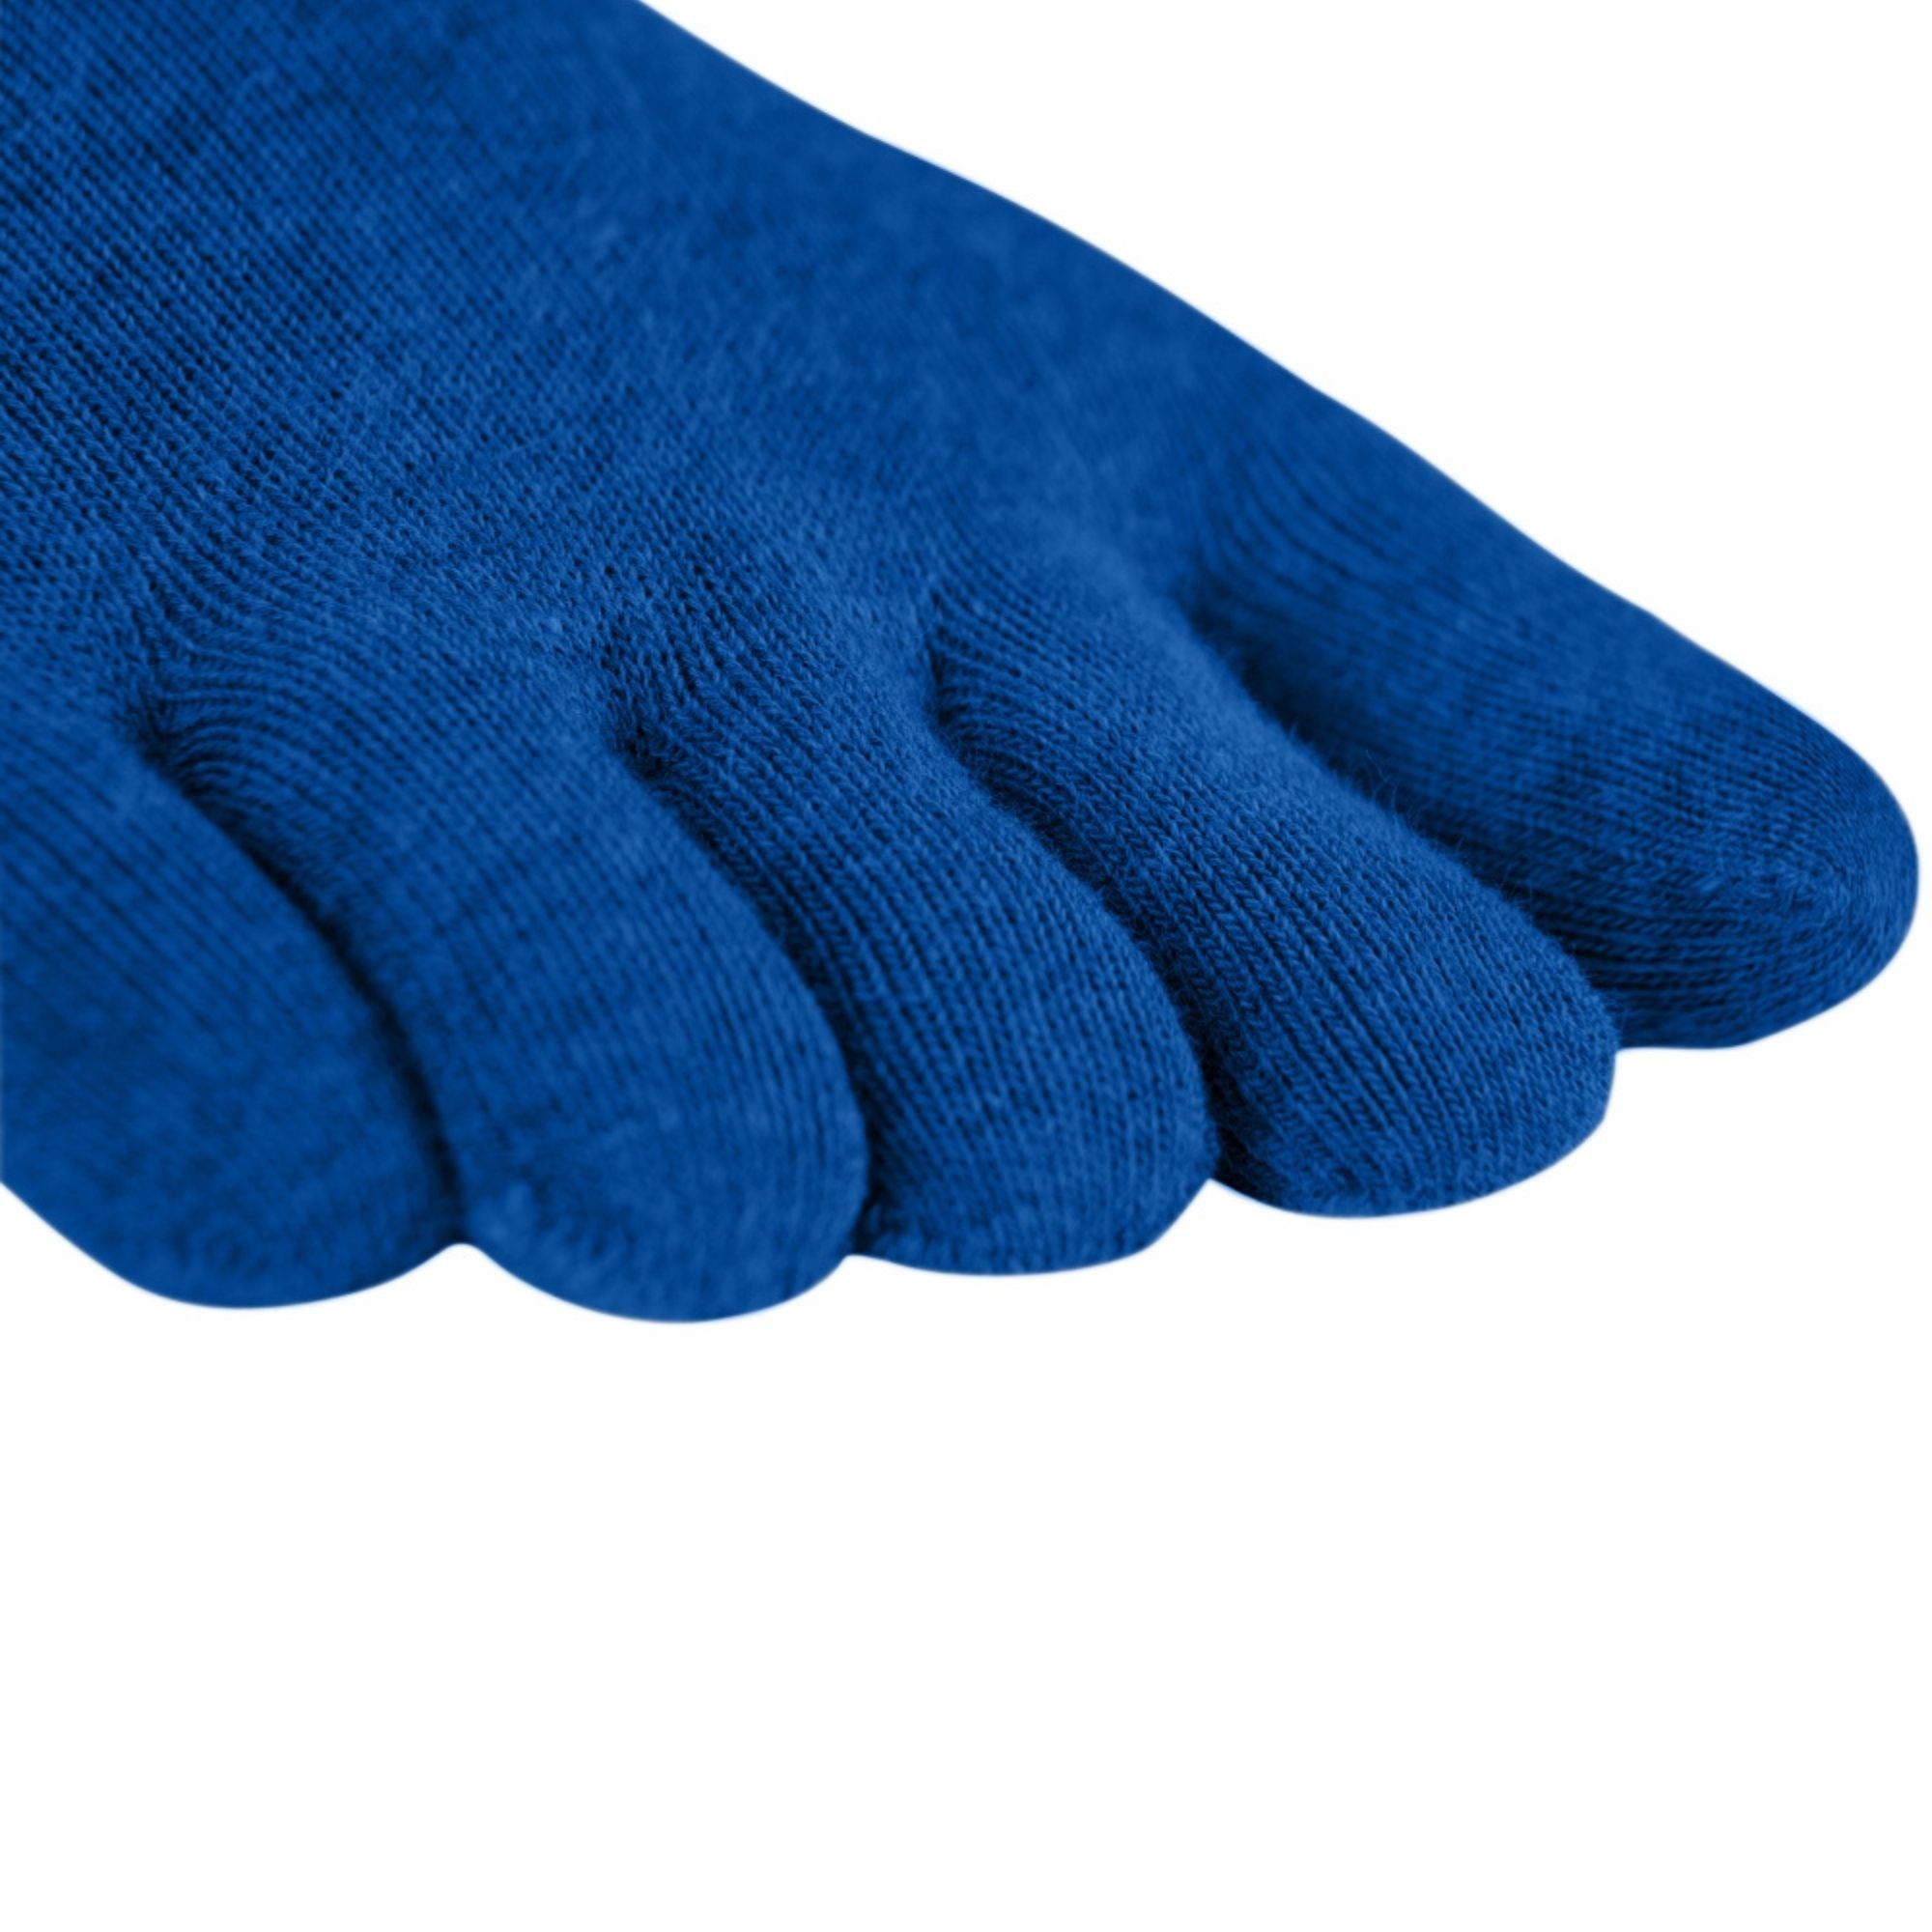 3 pakete športnih nogavic iz materiala Coolmax in bombaža znamke Knitido v mandarinsko modri barvi